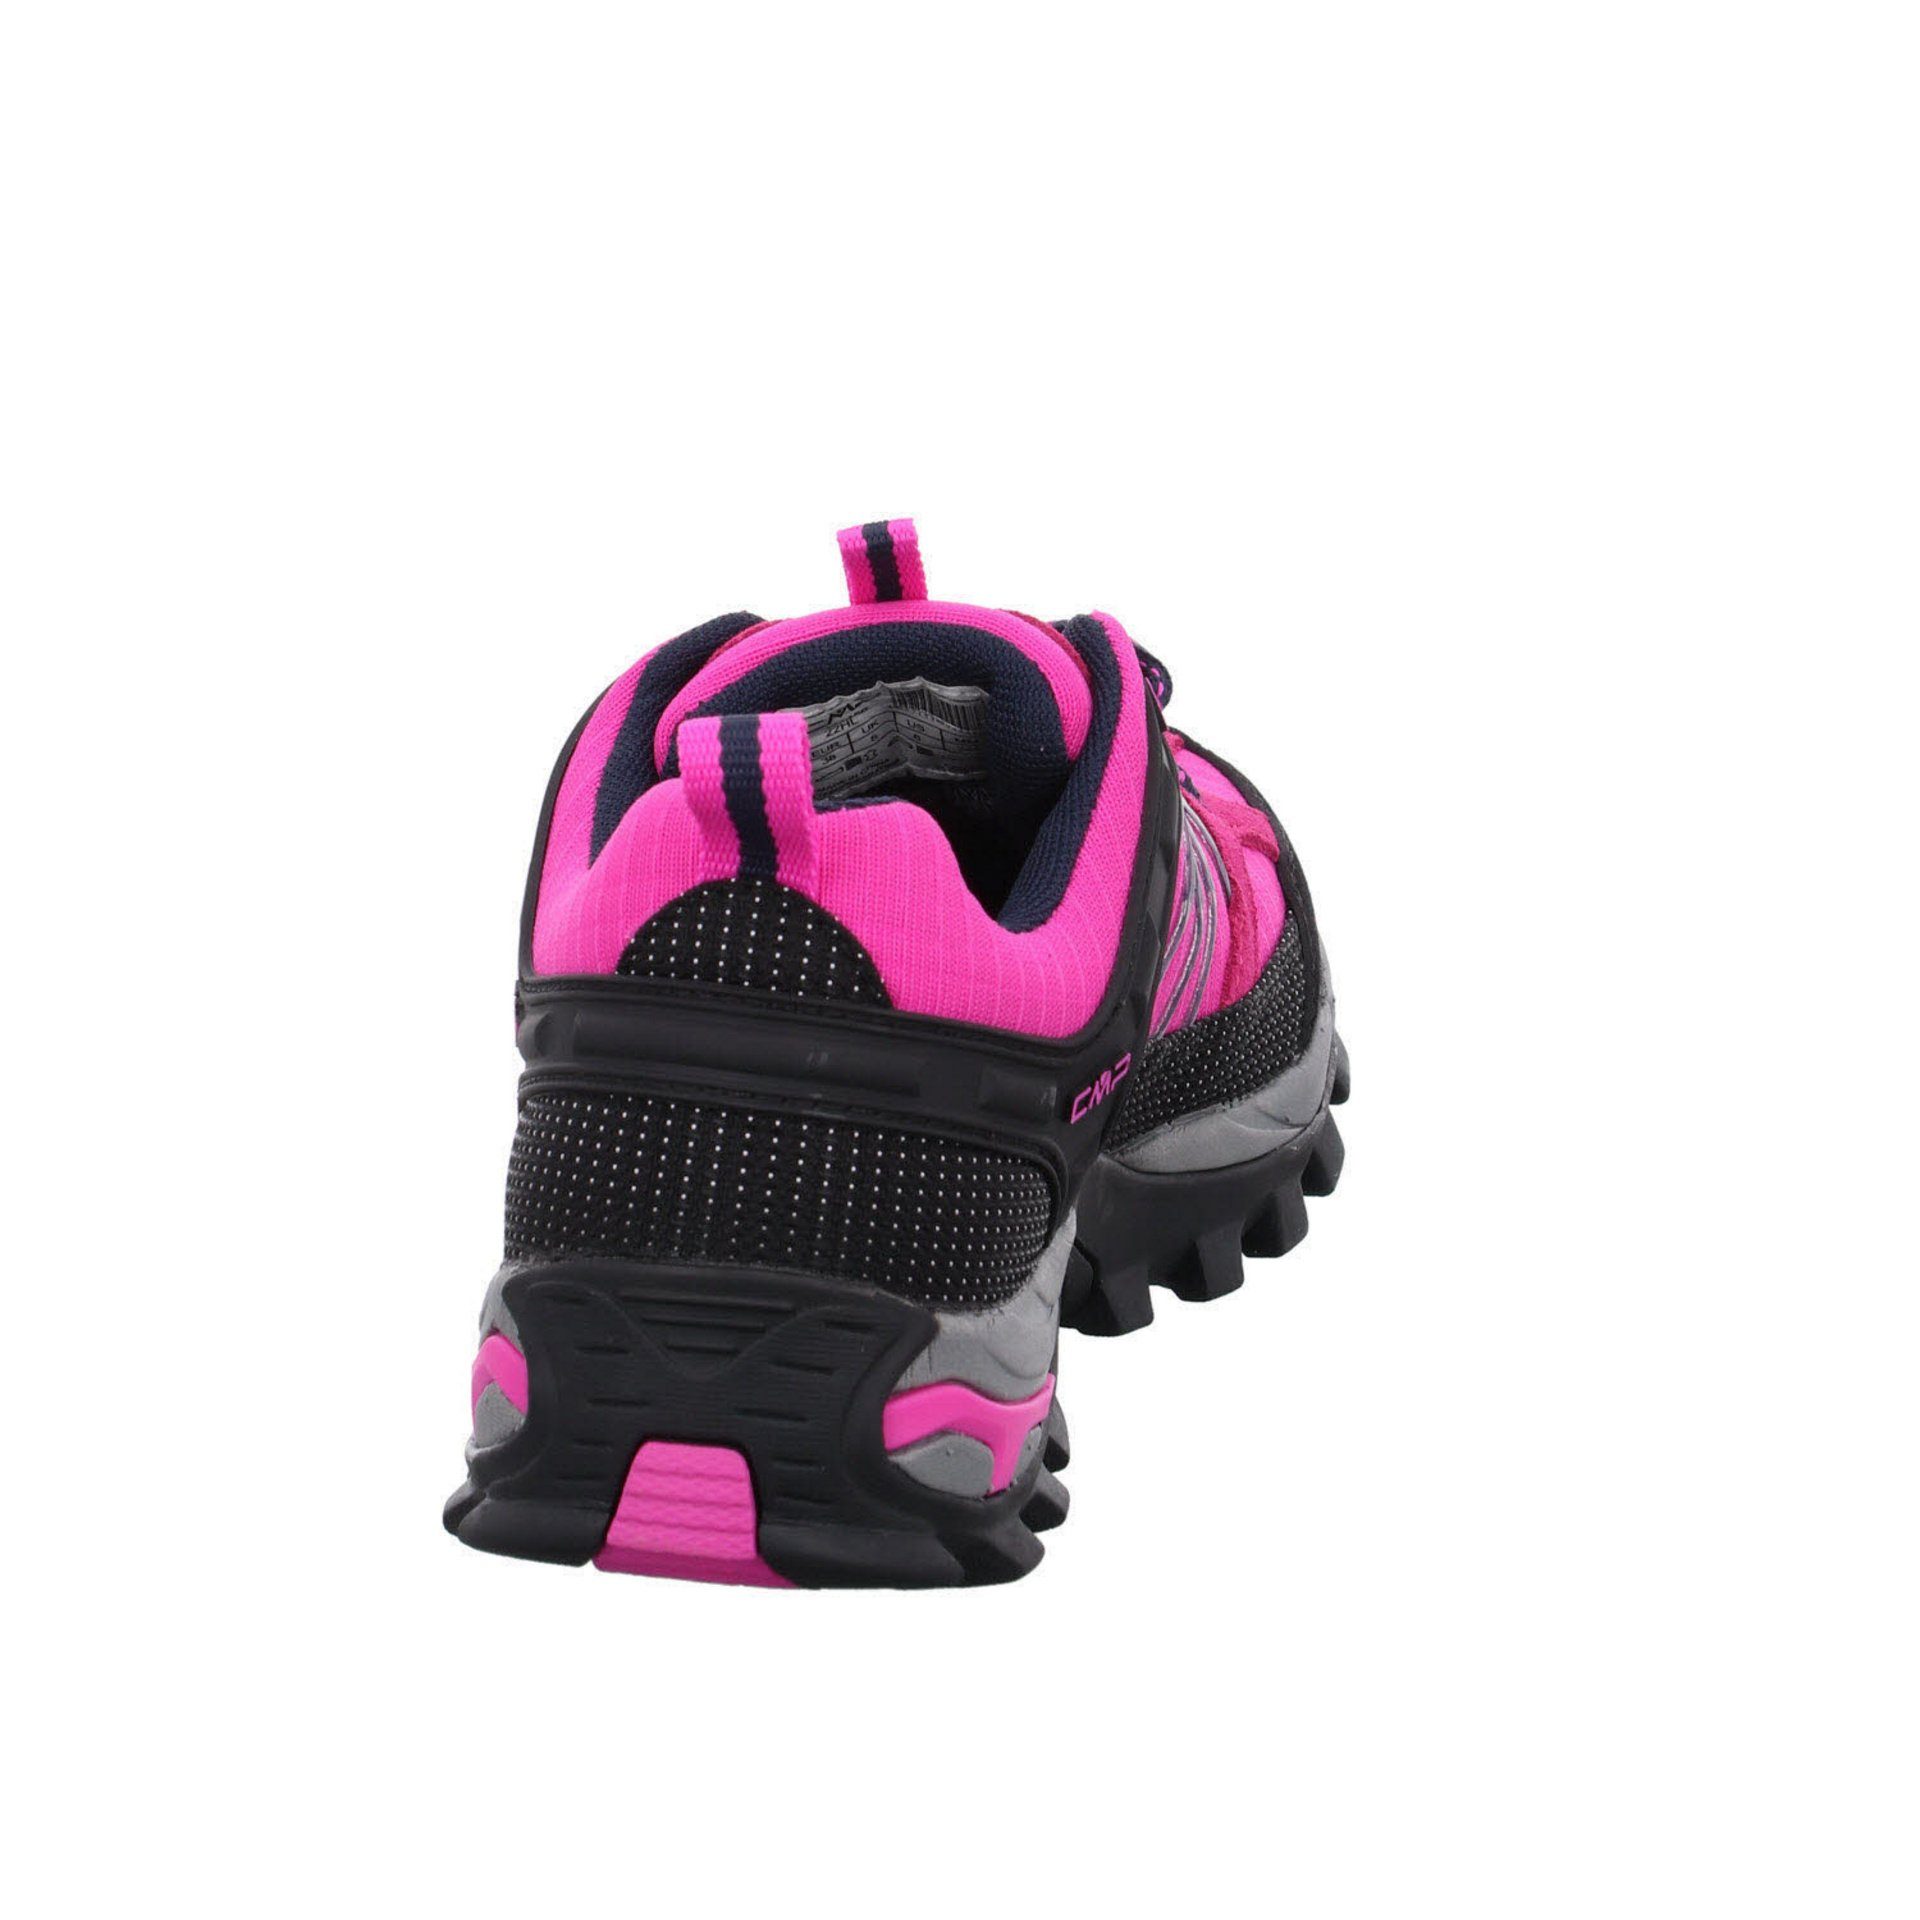 (03201886) Damen Outdoorschuh pink Low Leder-/Textilkombination Schuhe Rigel Outdoor Outdoorschuh CMP fluo-b.blue